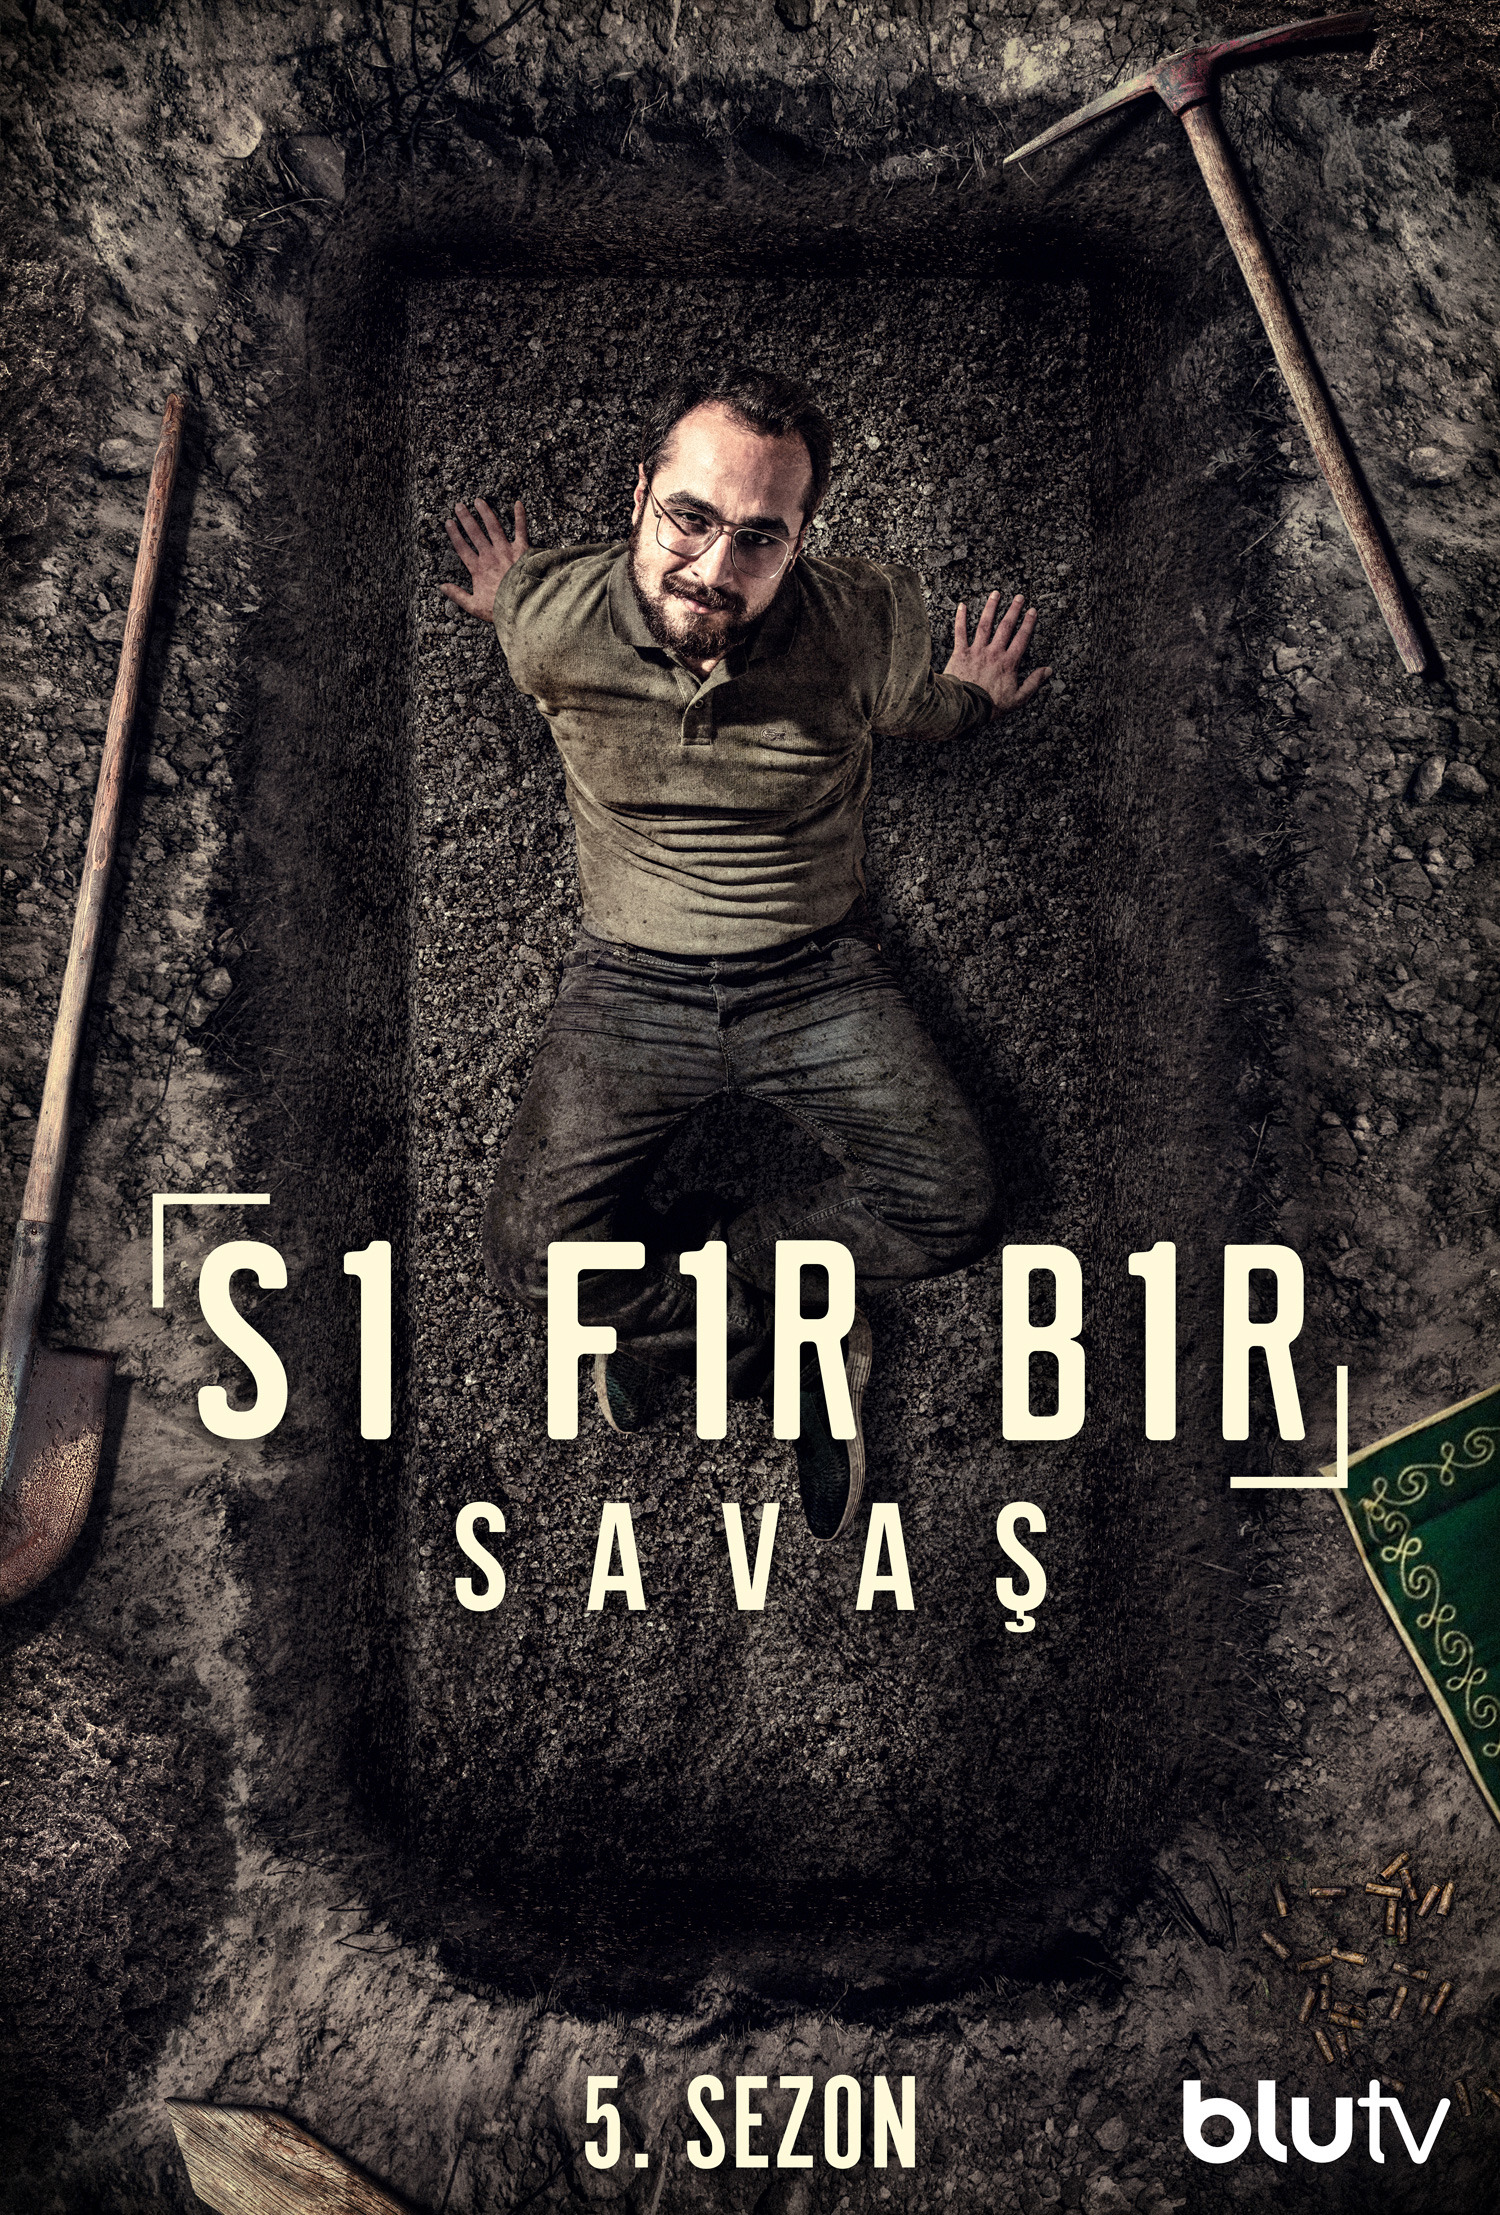 Mega Sized TV Poster Image for Sifir Bir (#14 of 23)